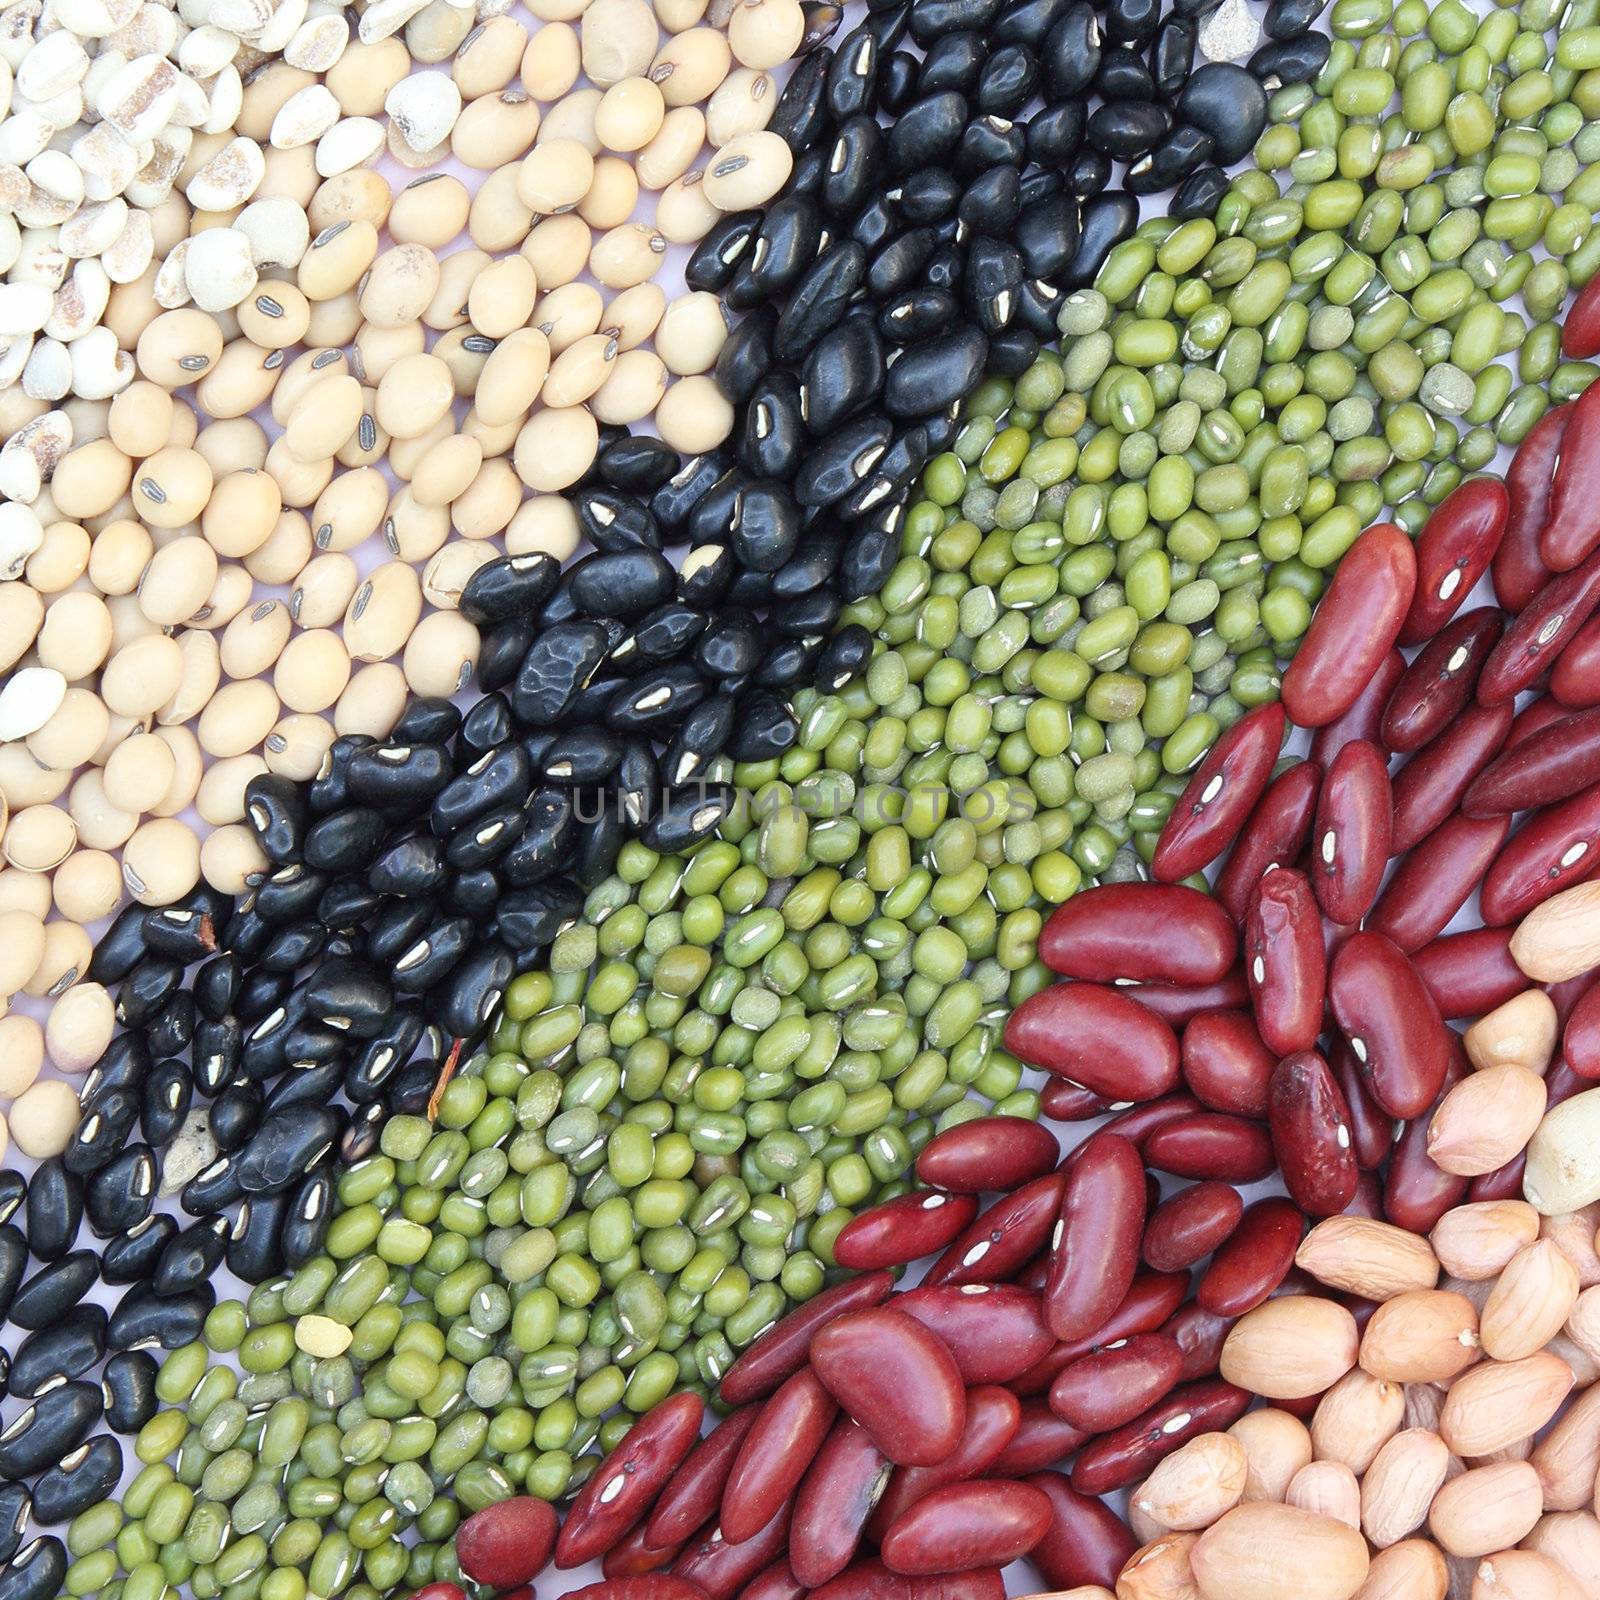 Varieties of beans  by wyoosumran